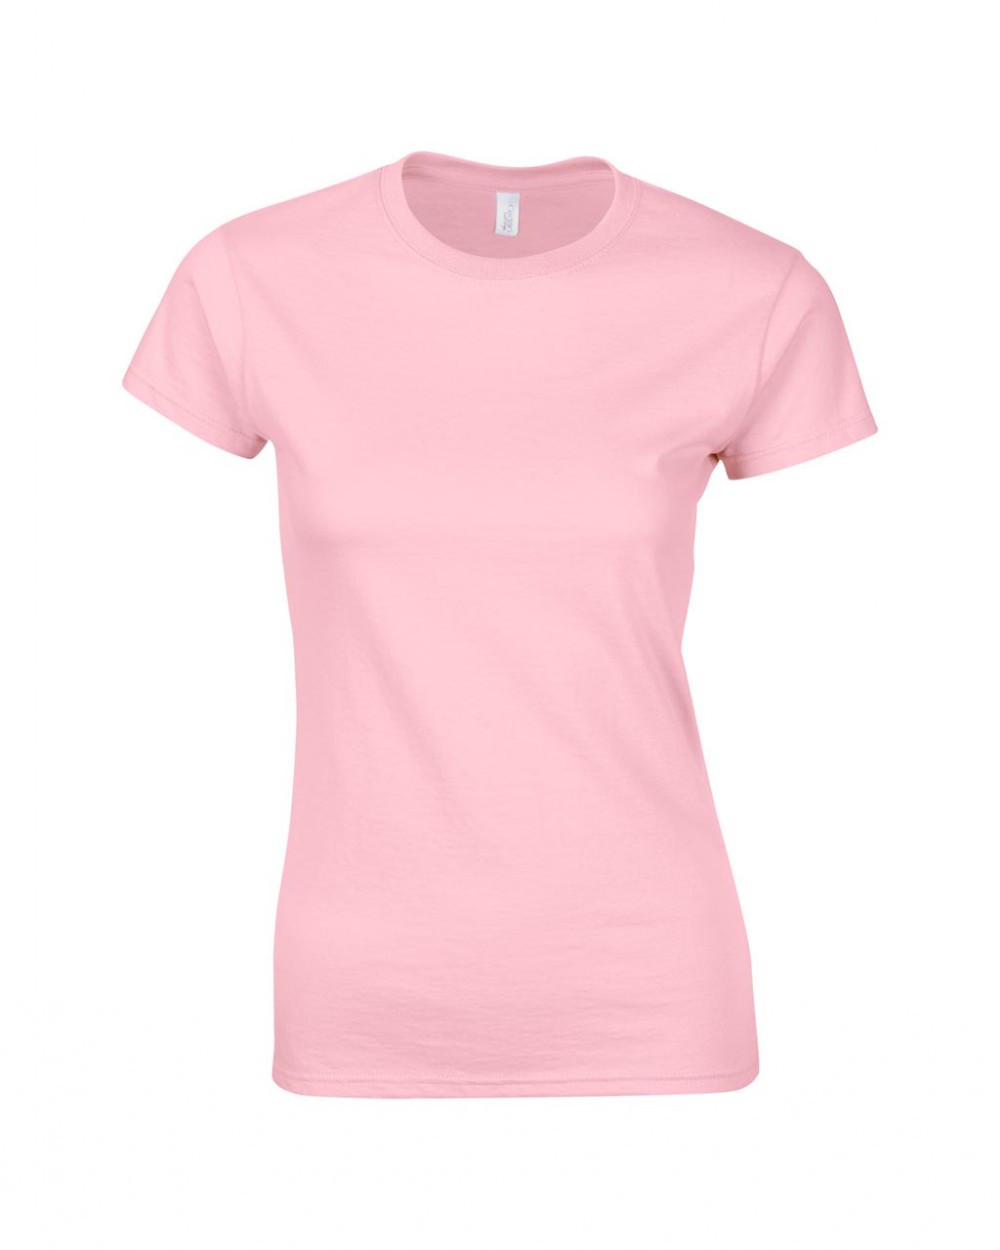 Gildan női testhez álló pamut póló - pink